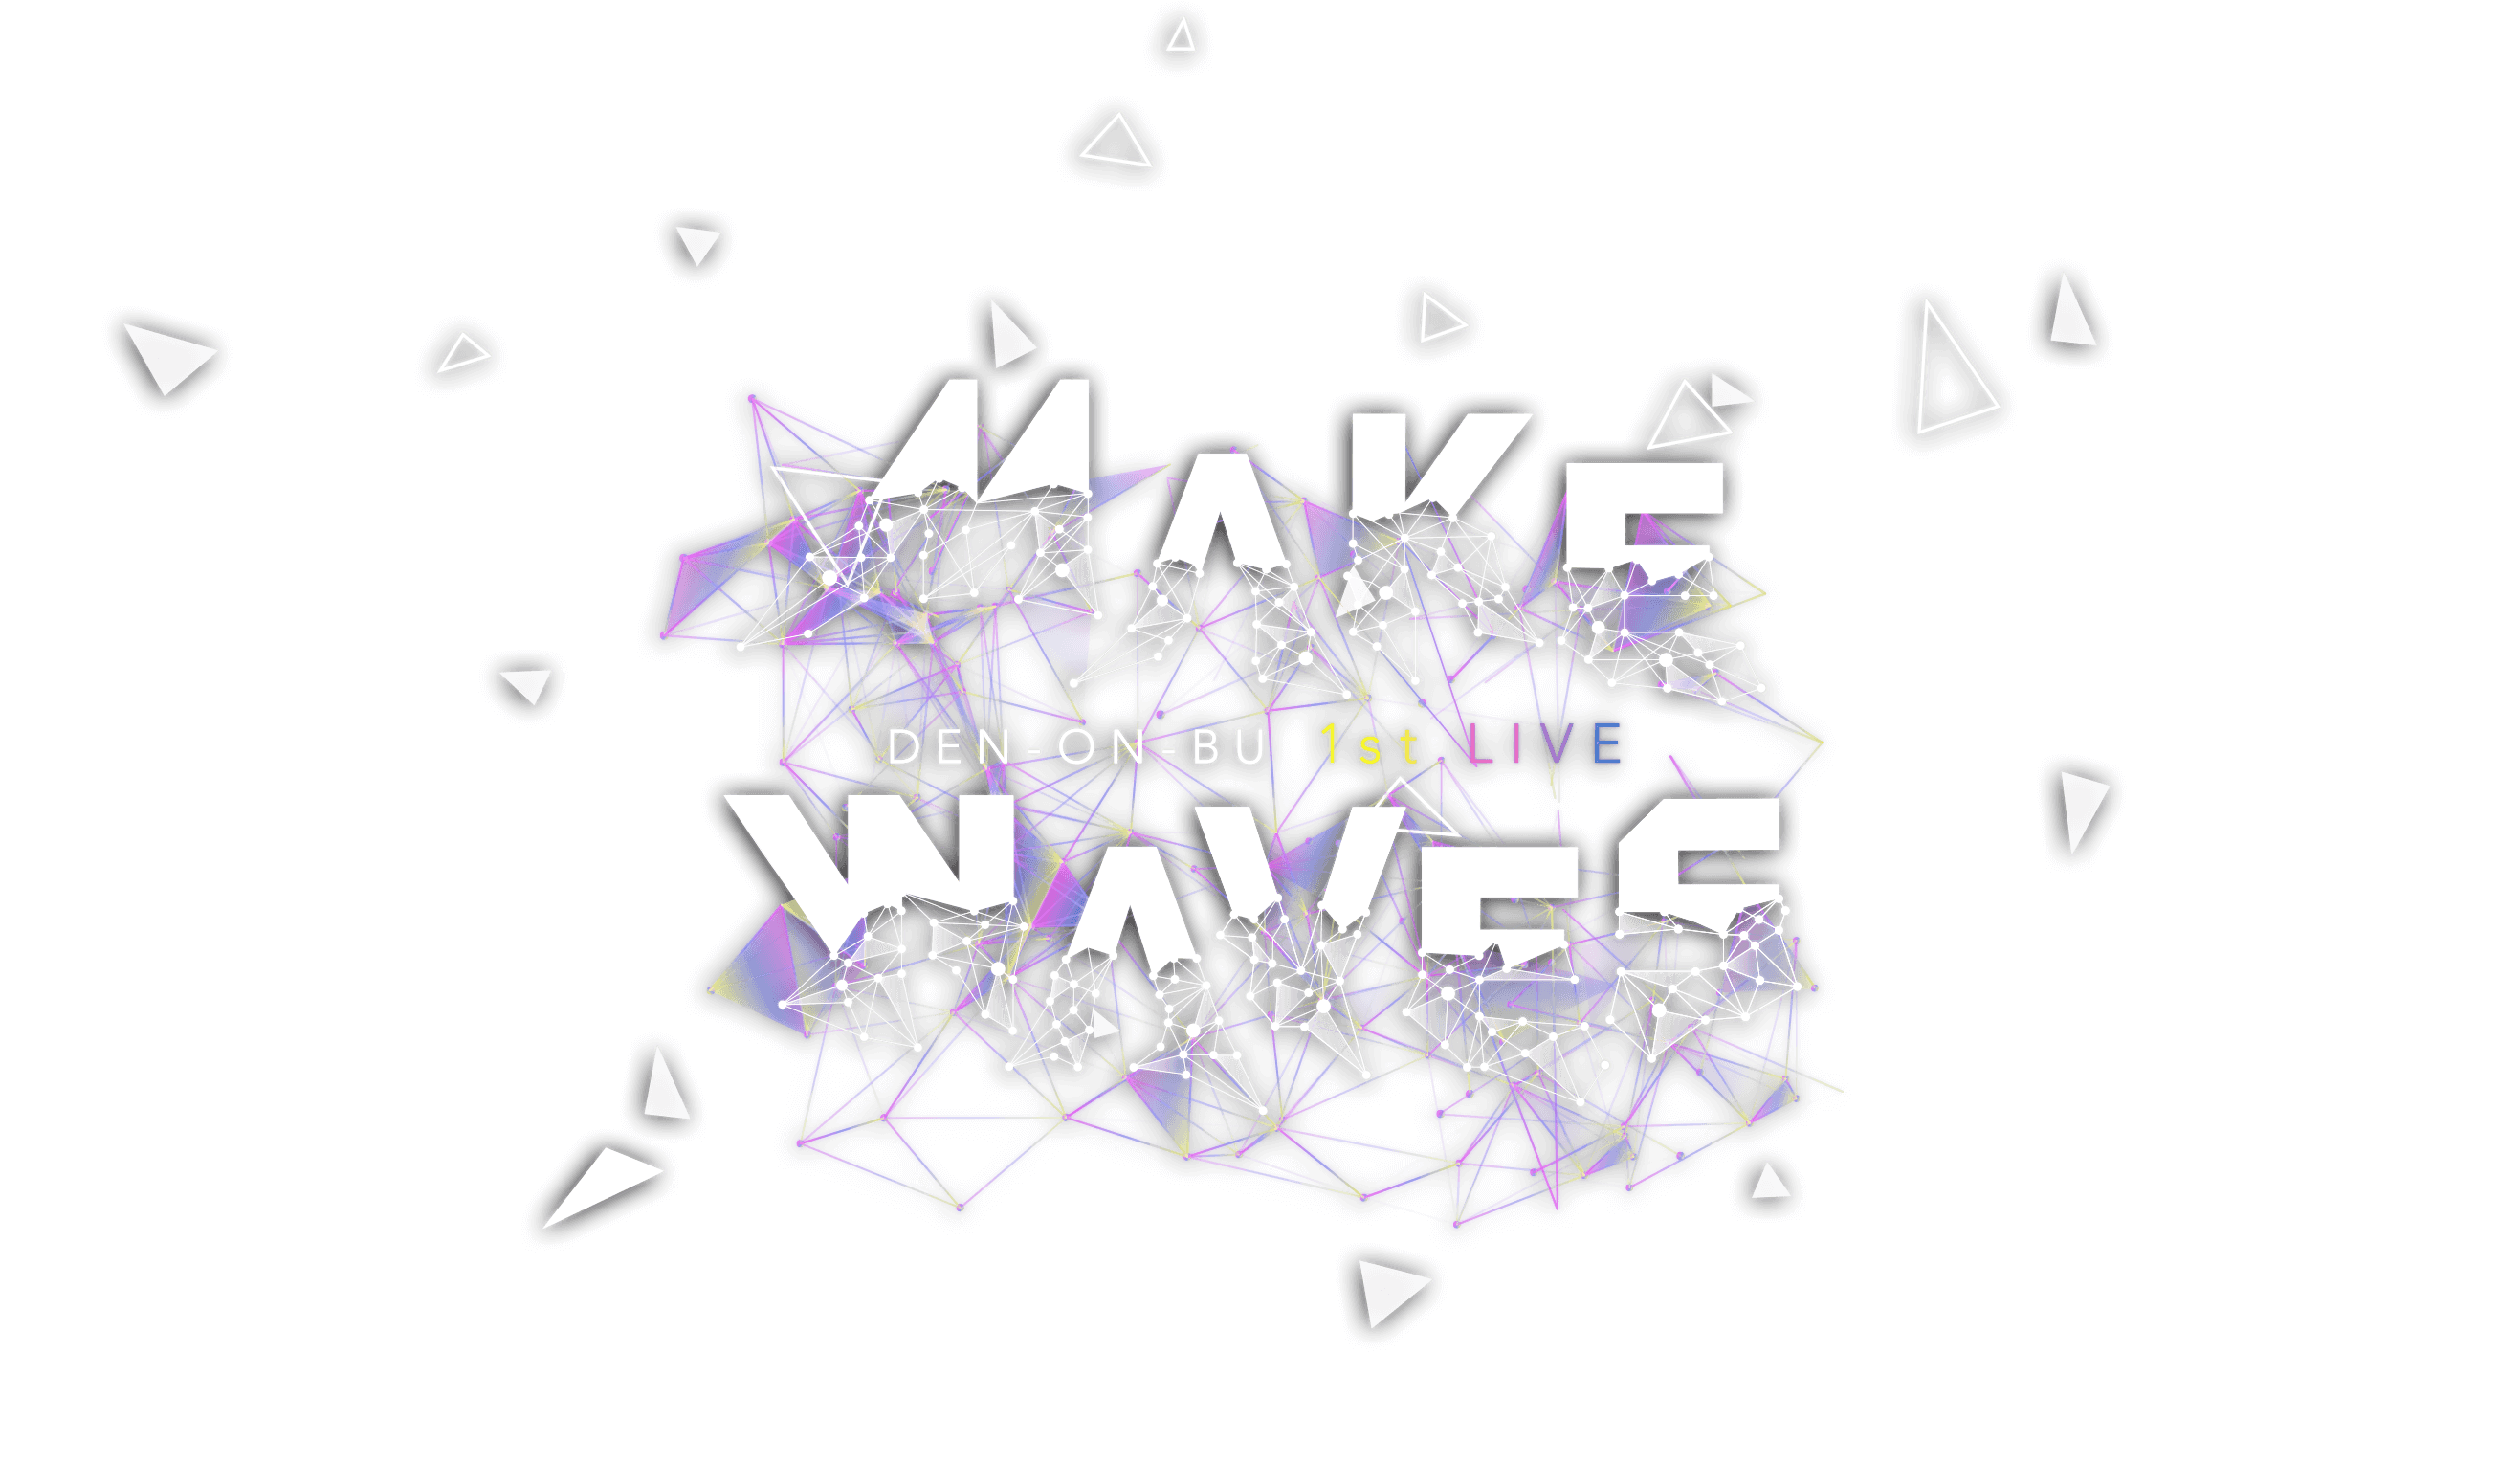 DEN-ON-BU 1st LIVE -MAKE WAVES-